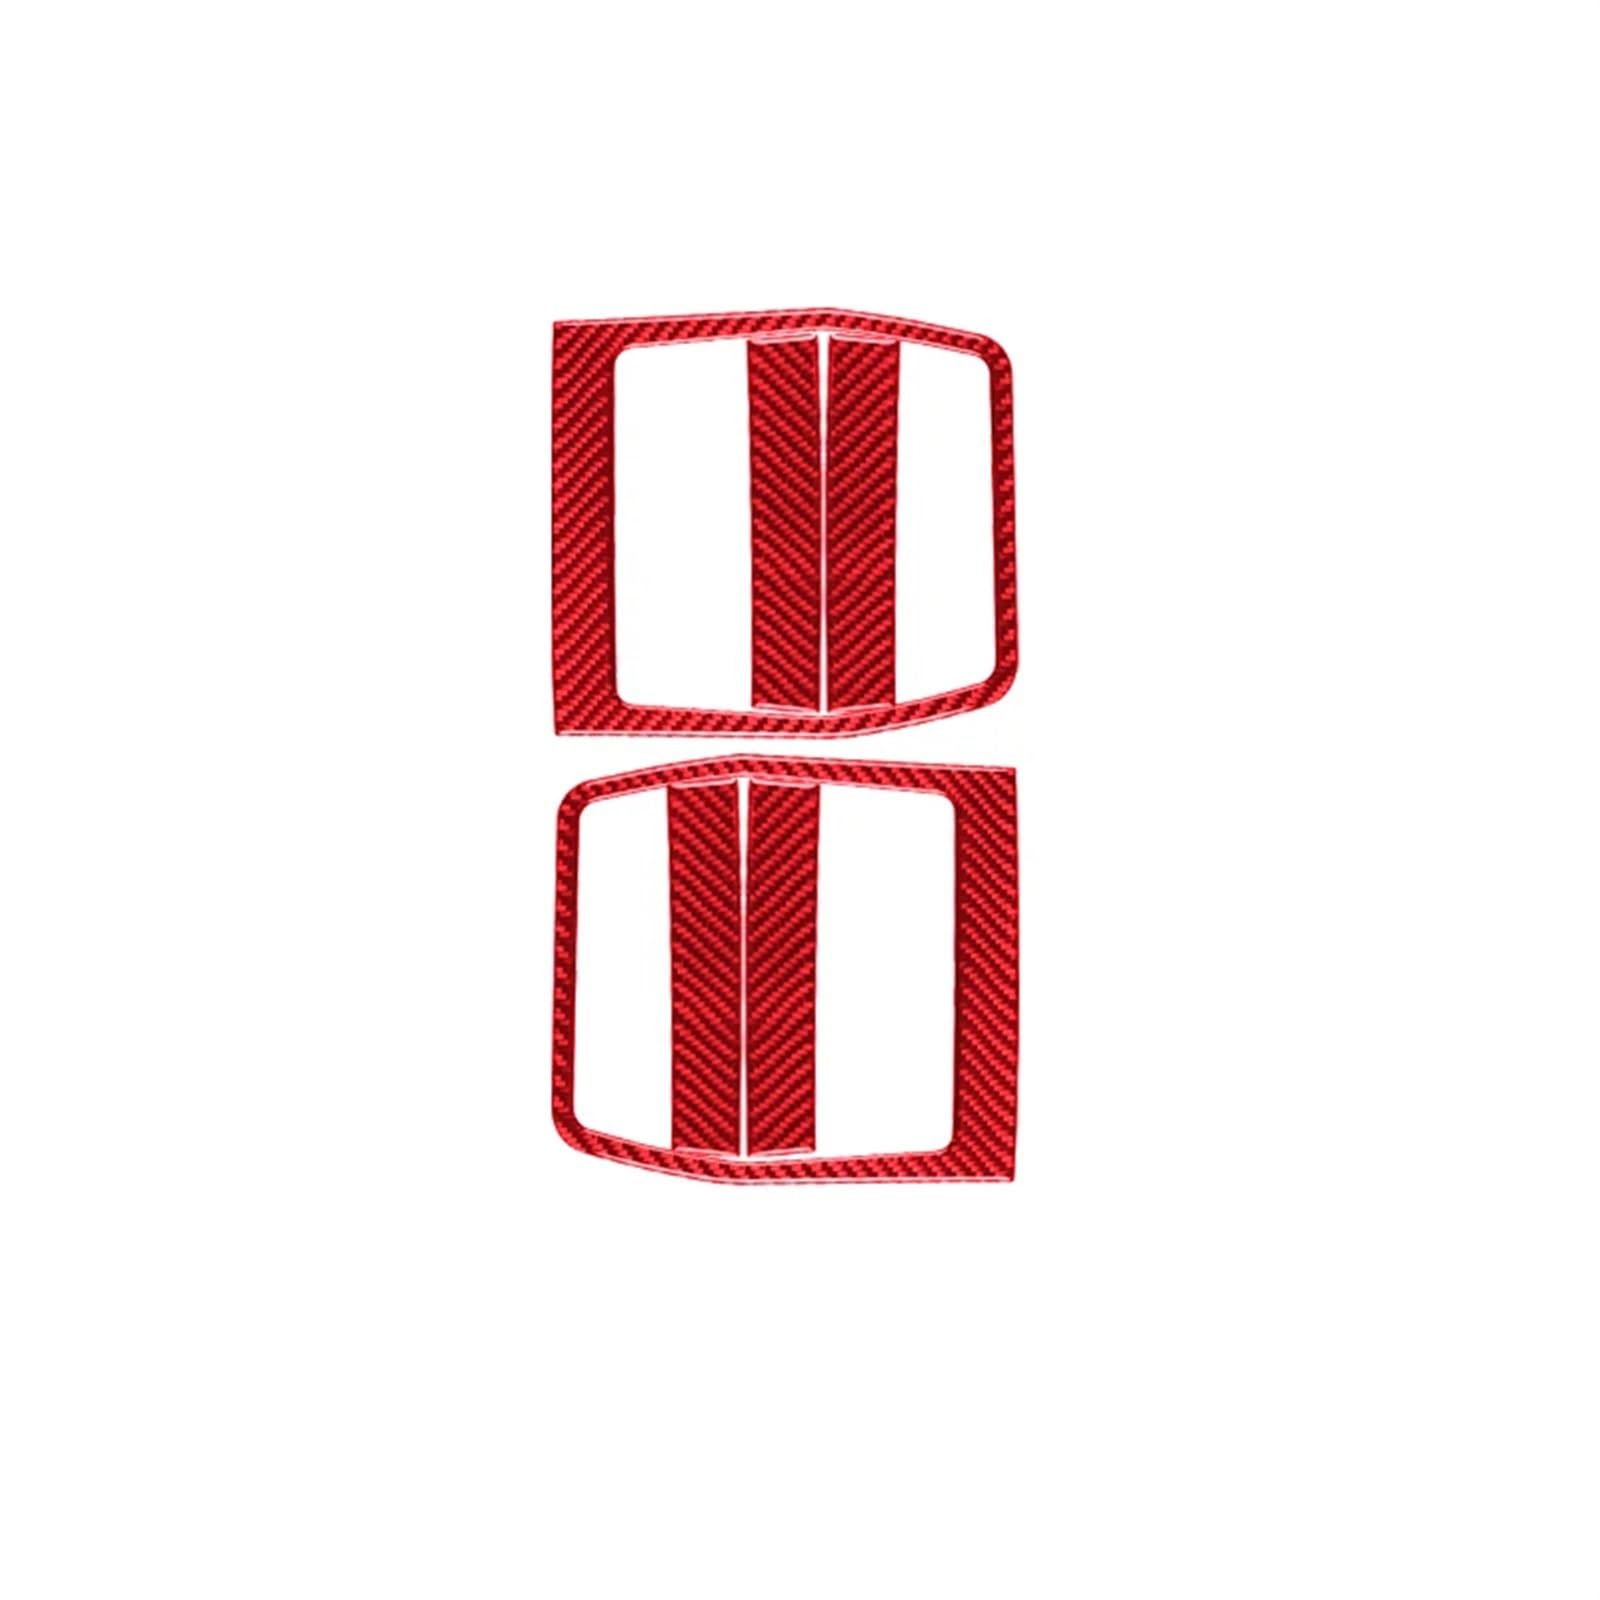 Mittelkonsole Styling Für Dodge Für Challenger 2008-2014 Armaturenbrett Zentralsteuerung Gangschaltung Verkleidung Modifiziertes Autozubehör Carbonfaser Innenaufkleber Mittelkonsole Verkleidung(Red) von HMGWLCGH